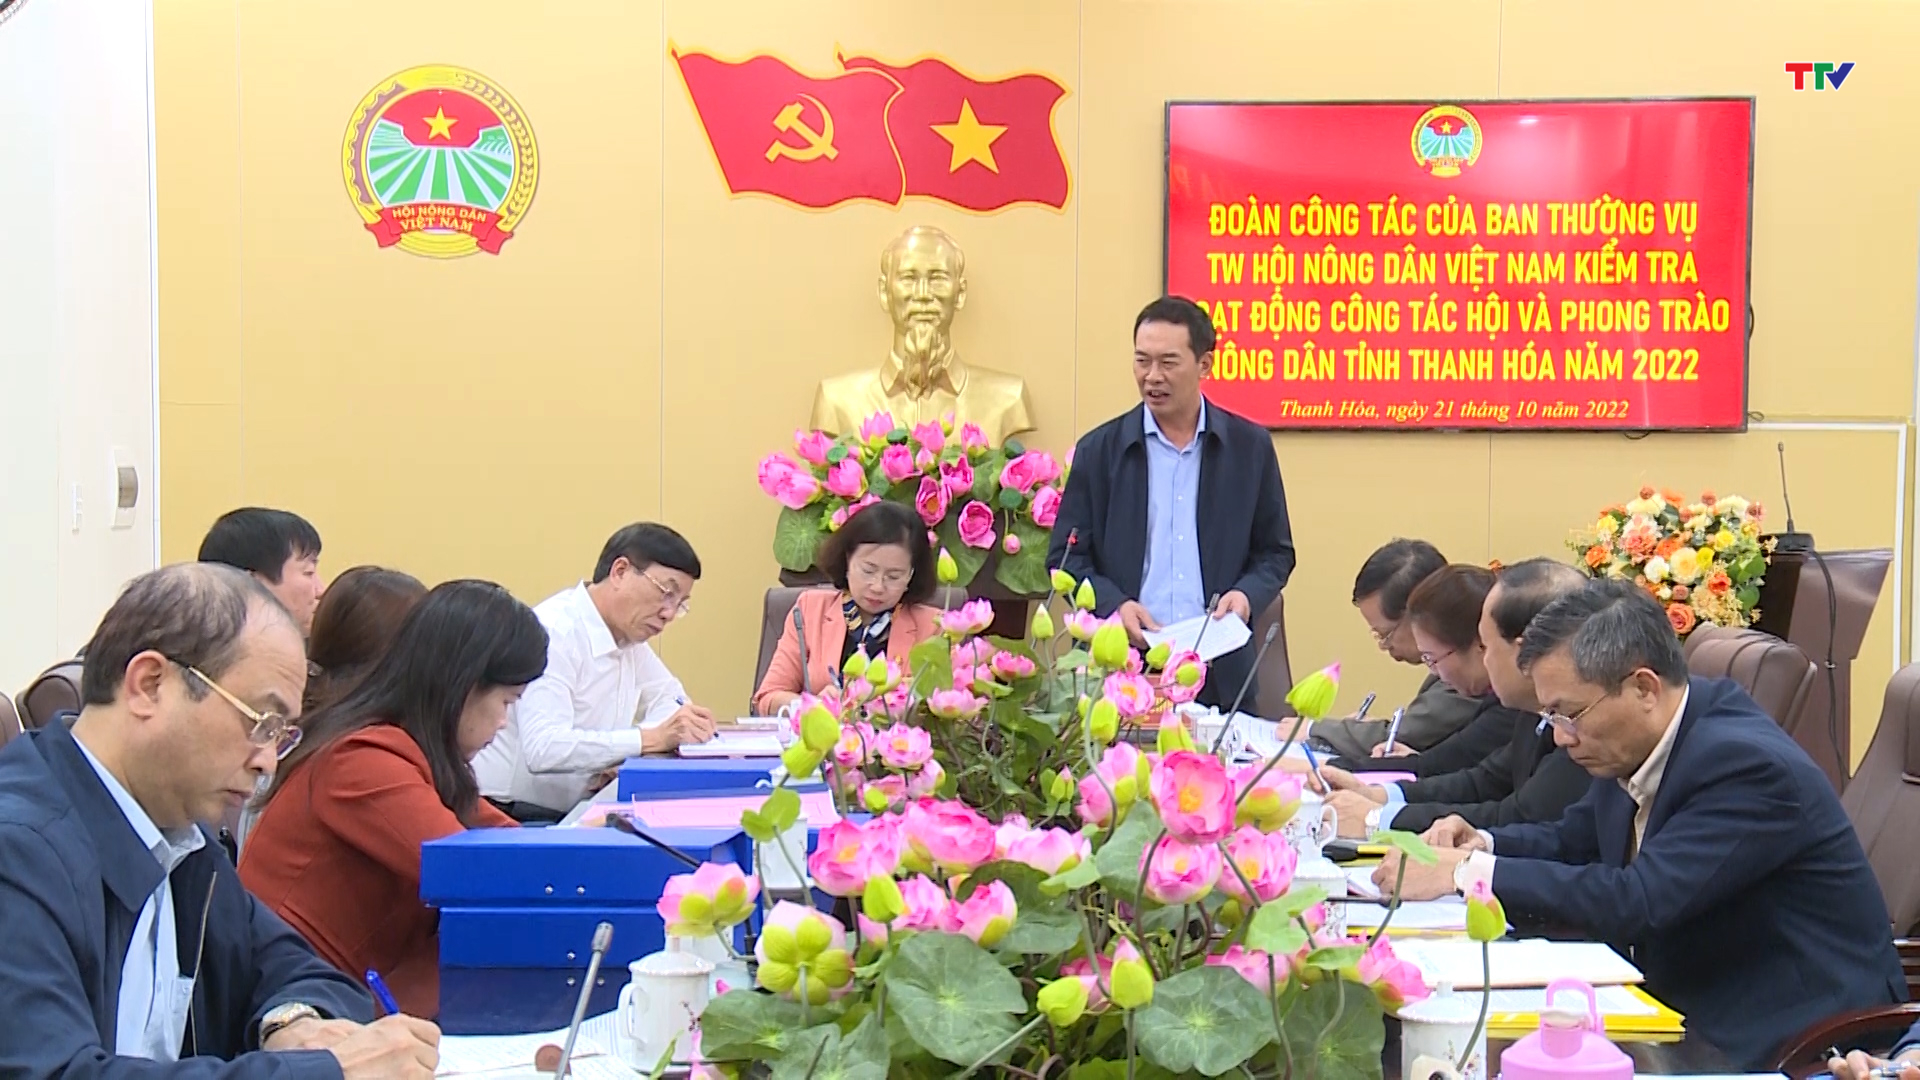 Phó Chủ tịch Hội Nông dân Việt Nam kiểm tra hoạt động công tác hội và phong trào nông dân tỉnh Thanh Hóa - Ảnh 2.